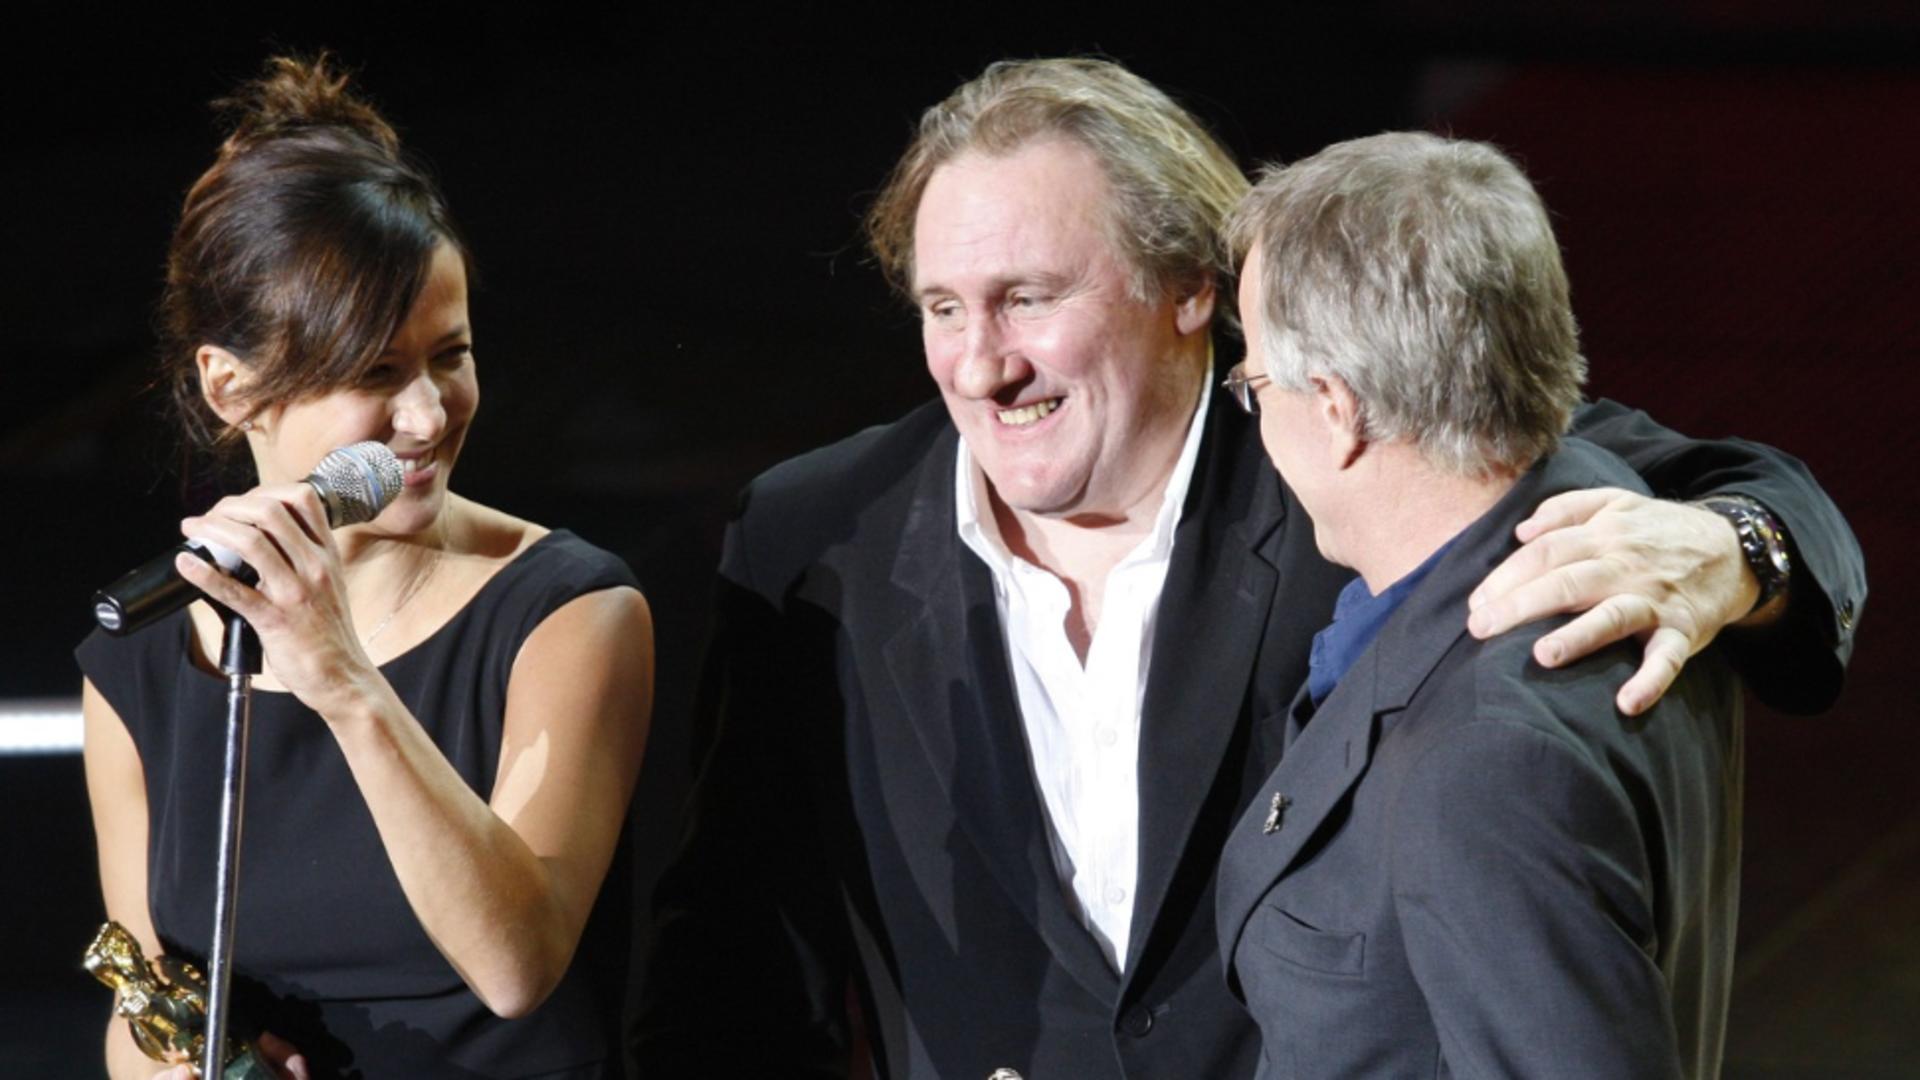 Depardieu, făcut praf de o mare actriță franceză: E vulgar și provocator, un prădător sexual